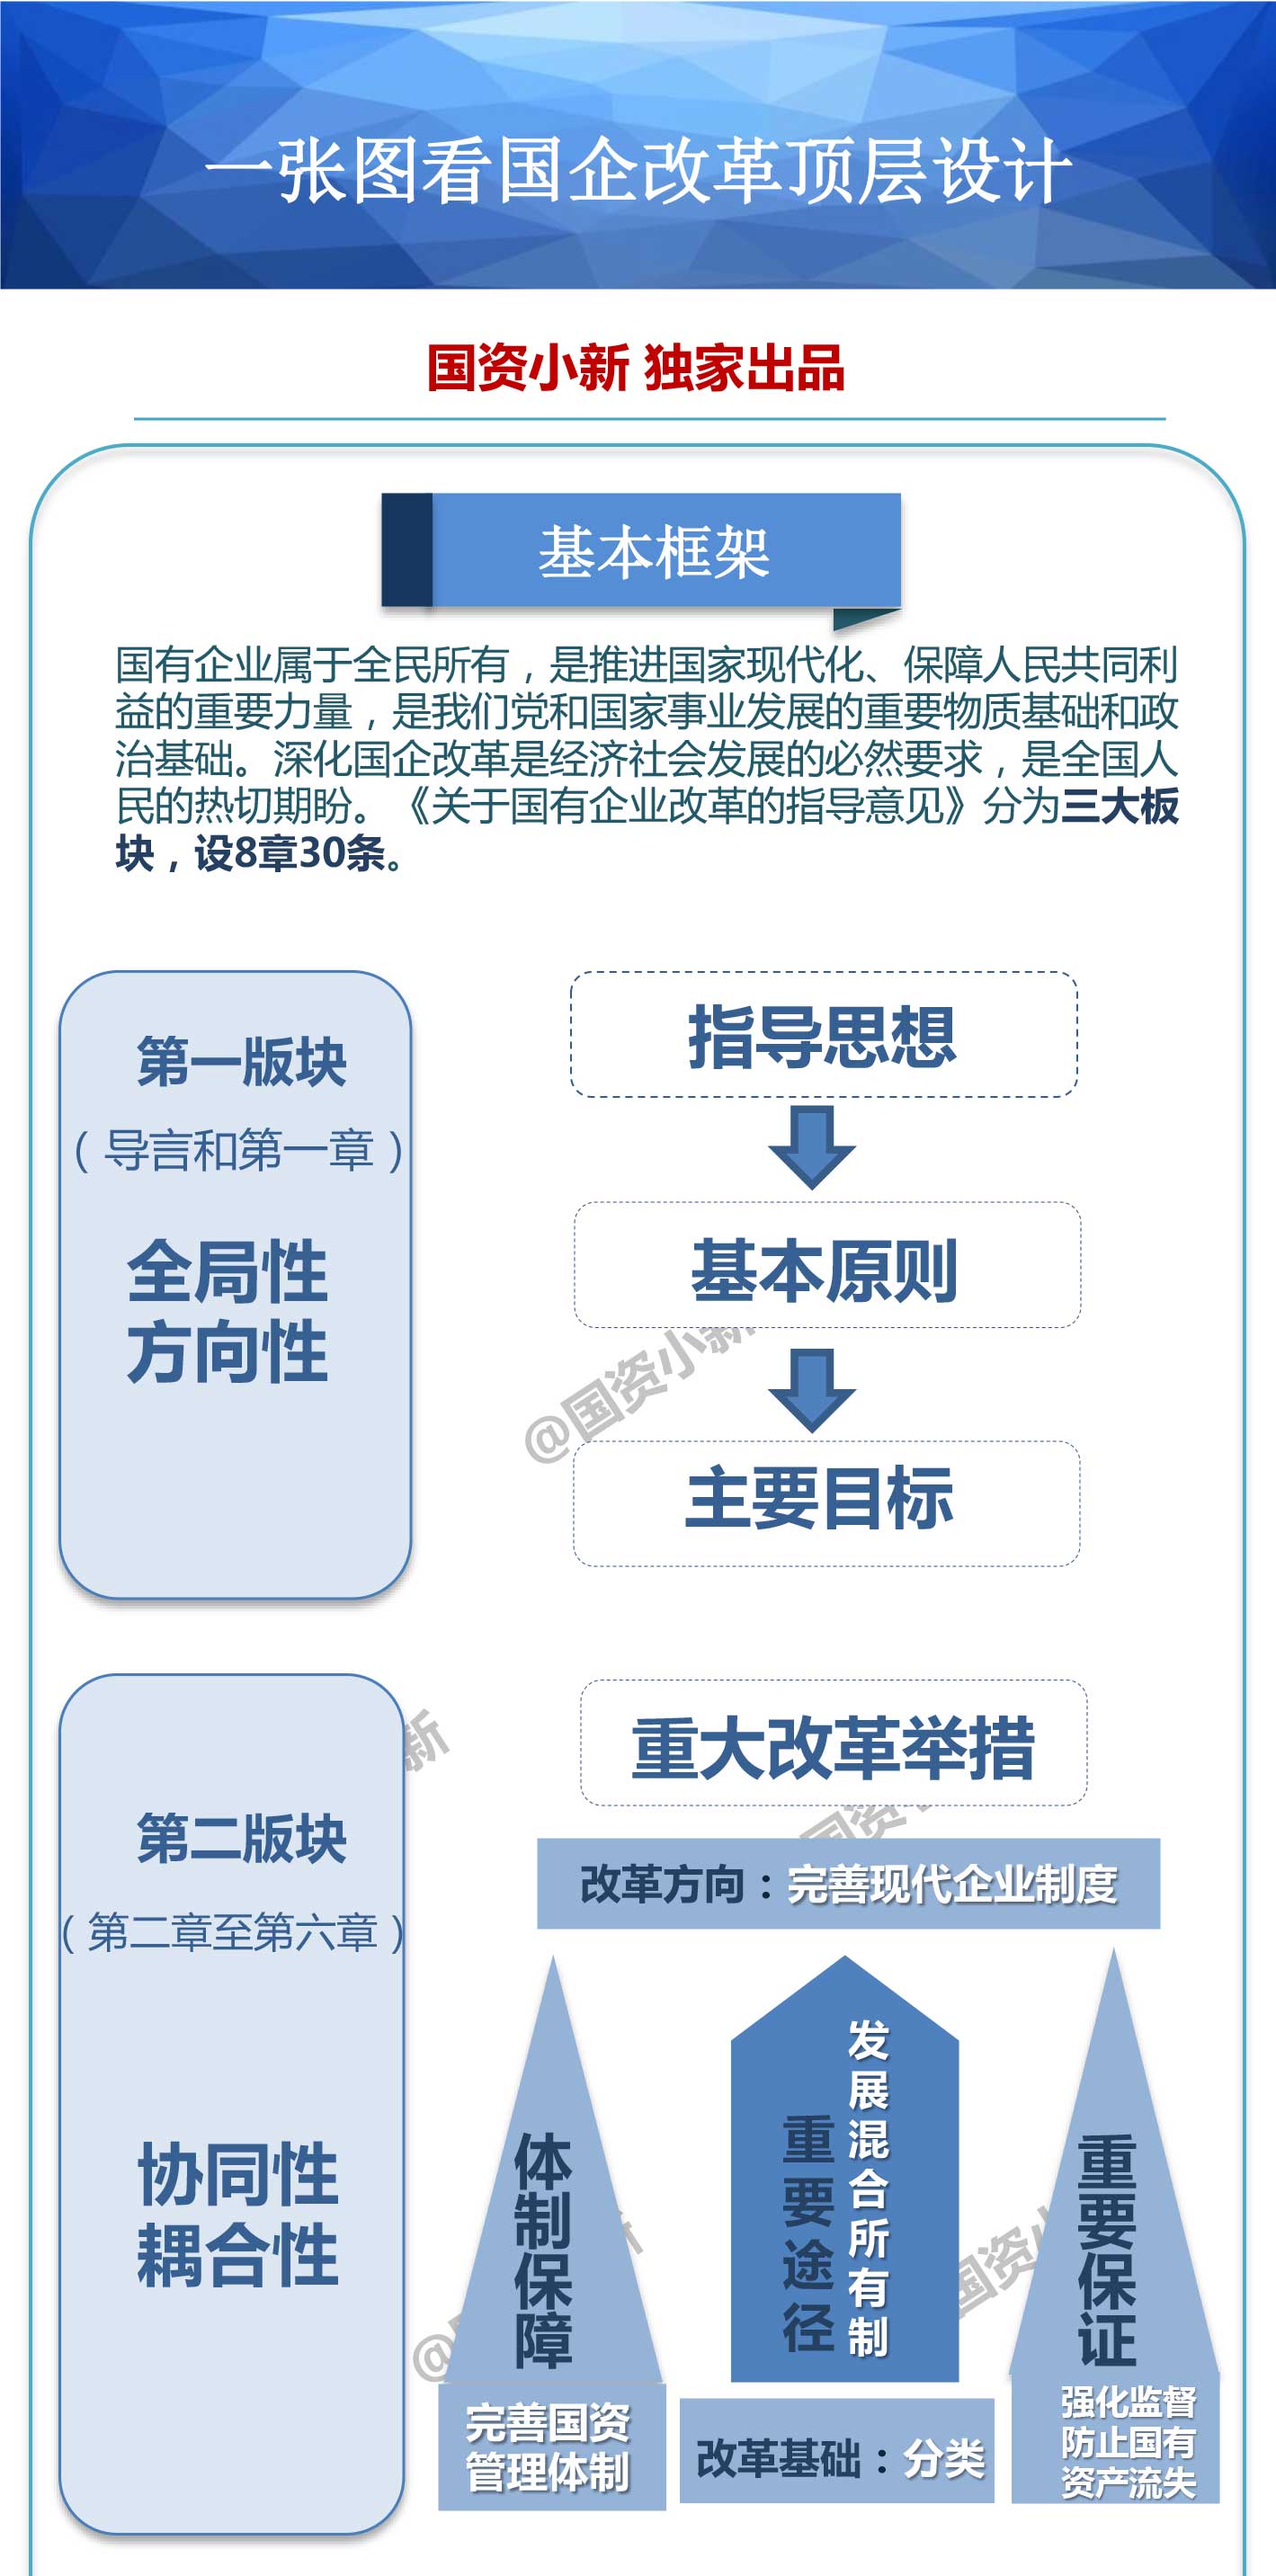 中共中央國務院關於深化國有企業改革的指導意見